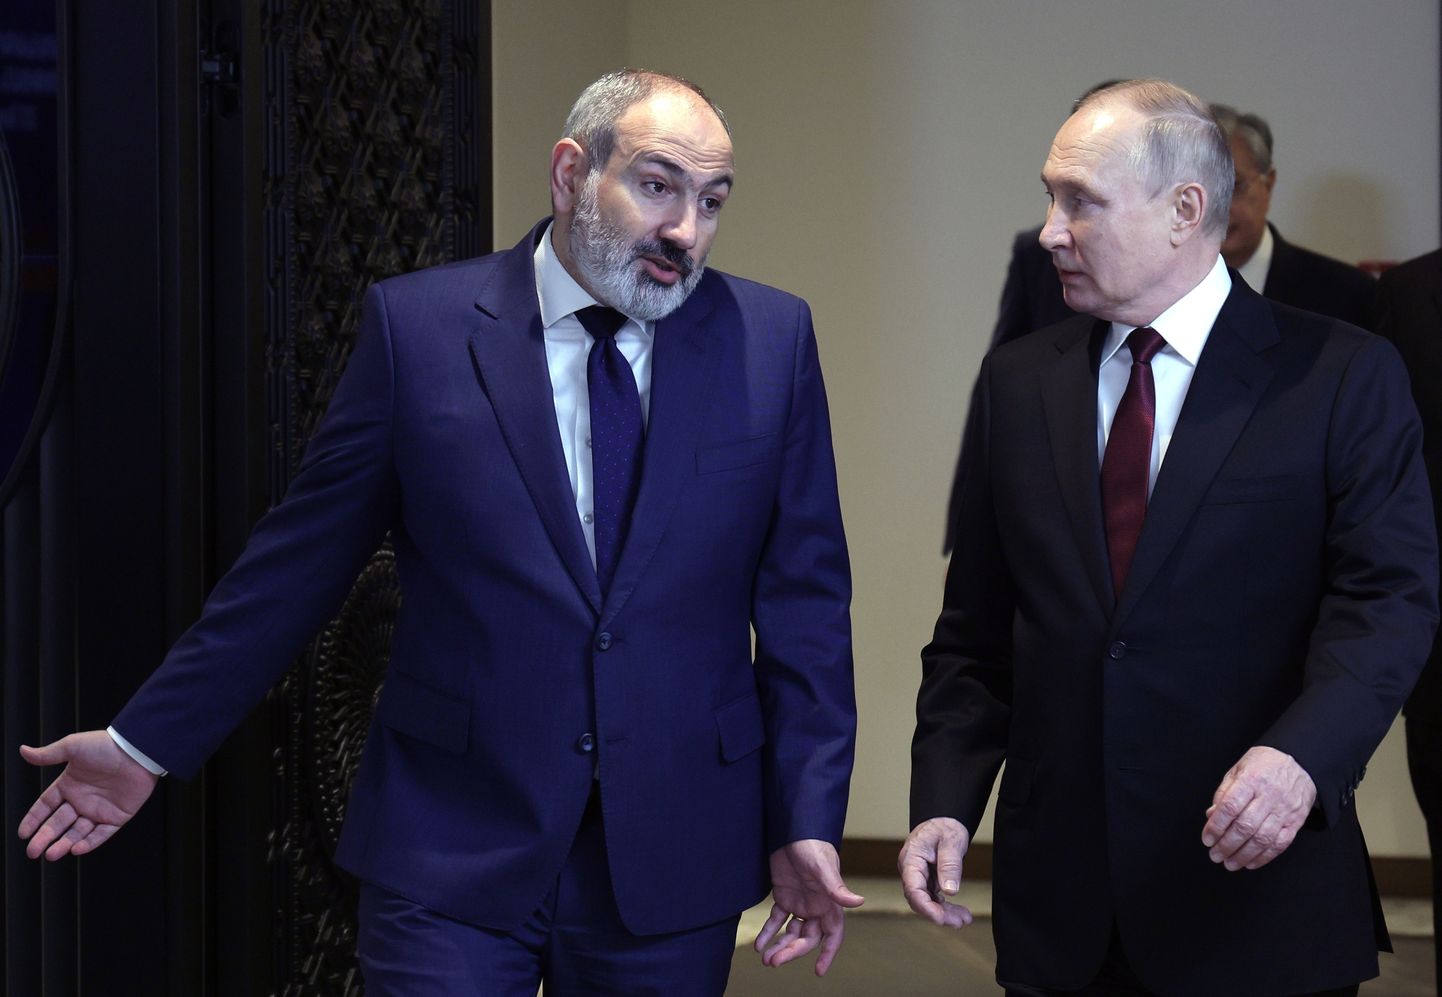 Armeenia peaminister Nikol Pašinjan ja Venemaa president Vladimir Putin rääkimas Kollektiivse Julgeoleku Lepingu Organisatsiooniga (KJLO) tippkohtumisel Jerevanis 23. novembril 2022. aastal.